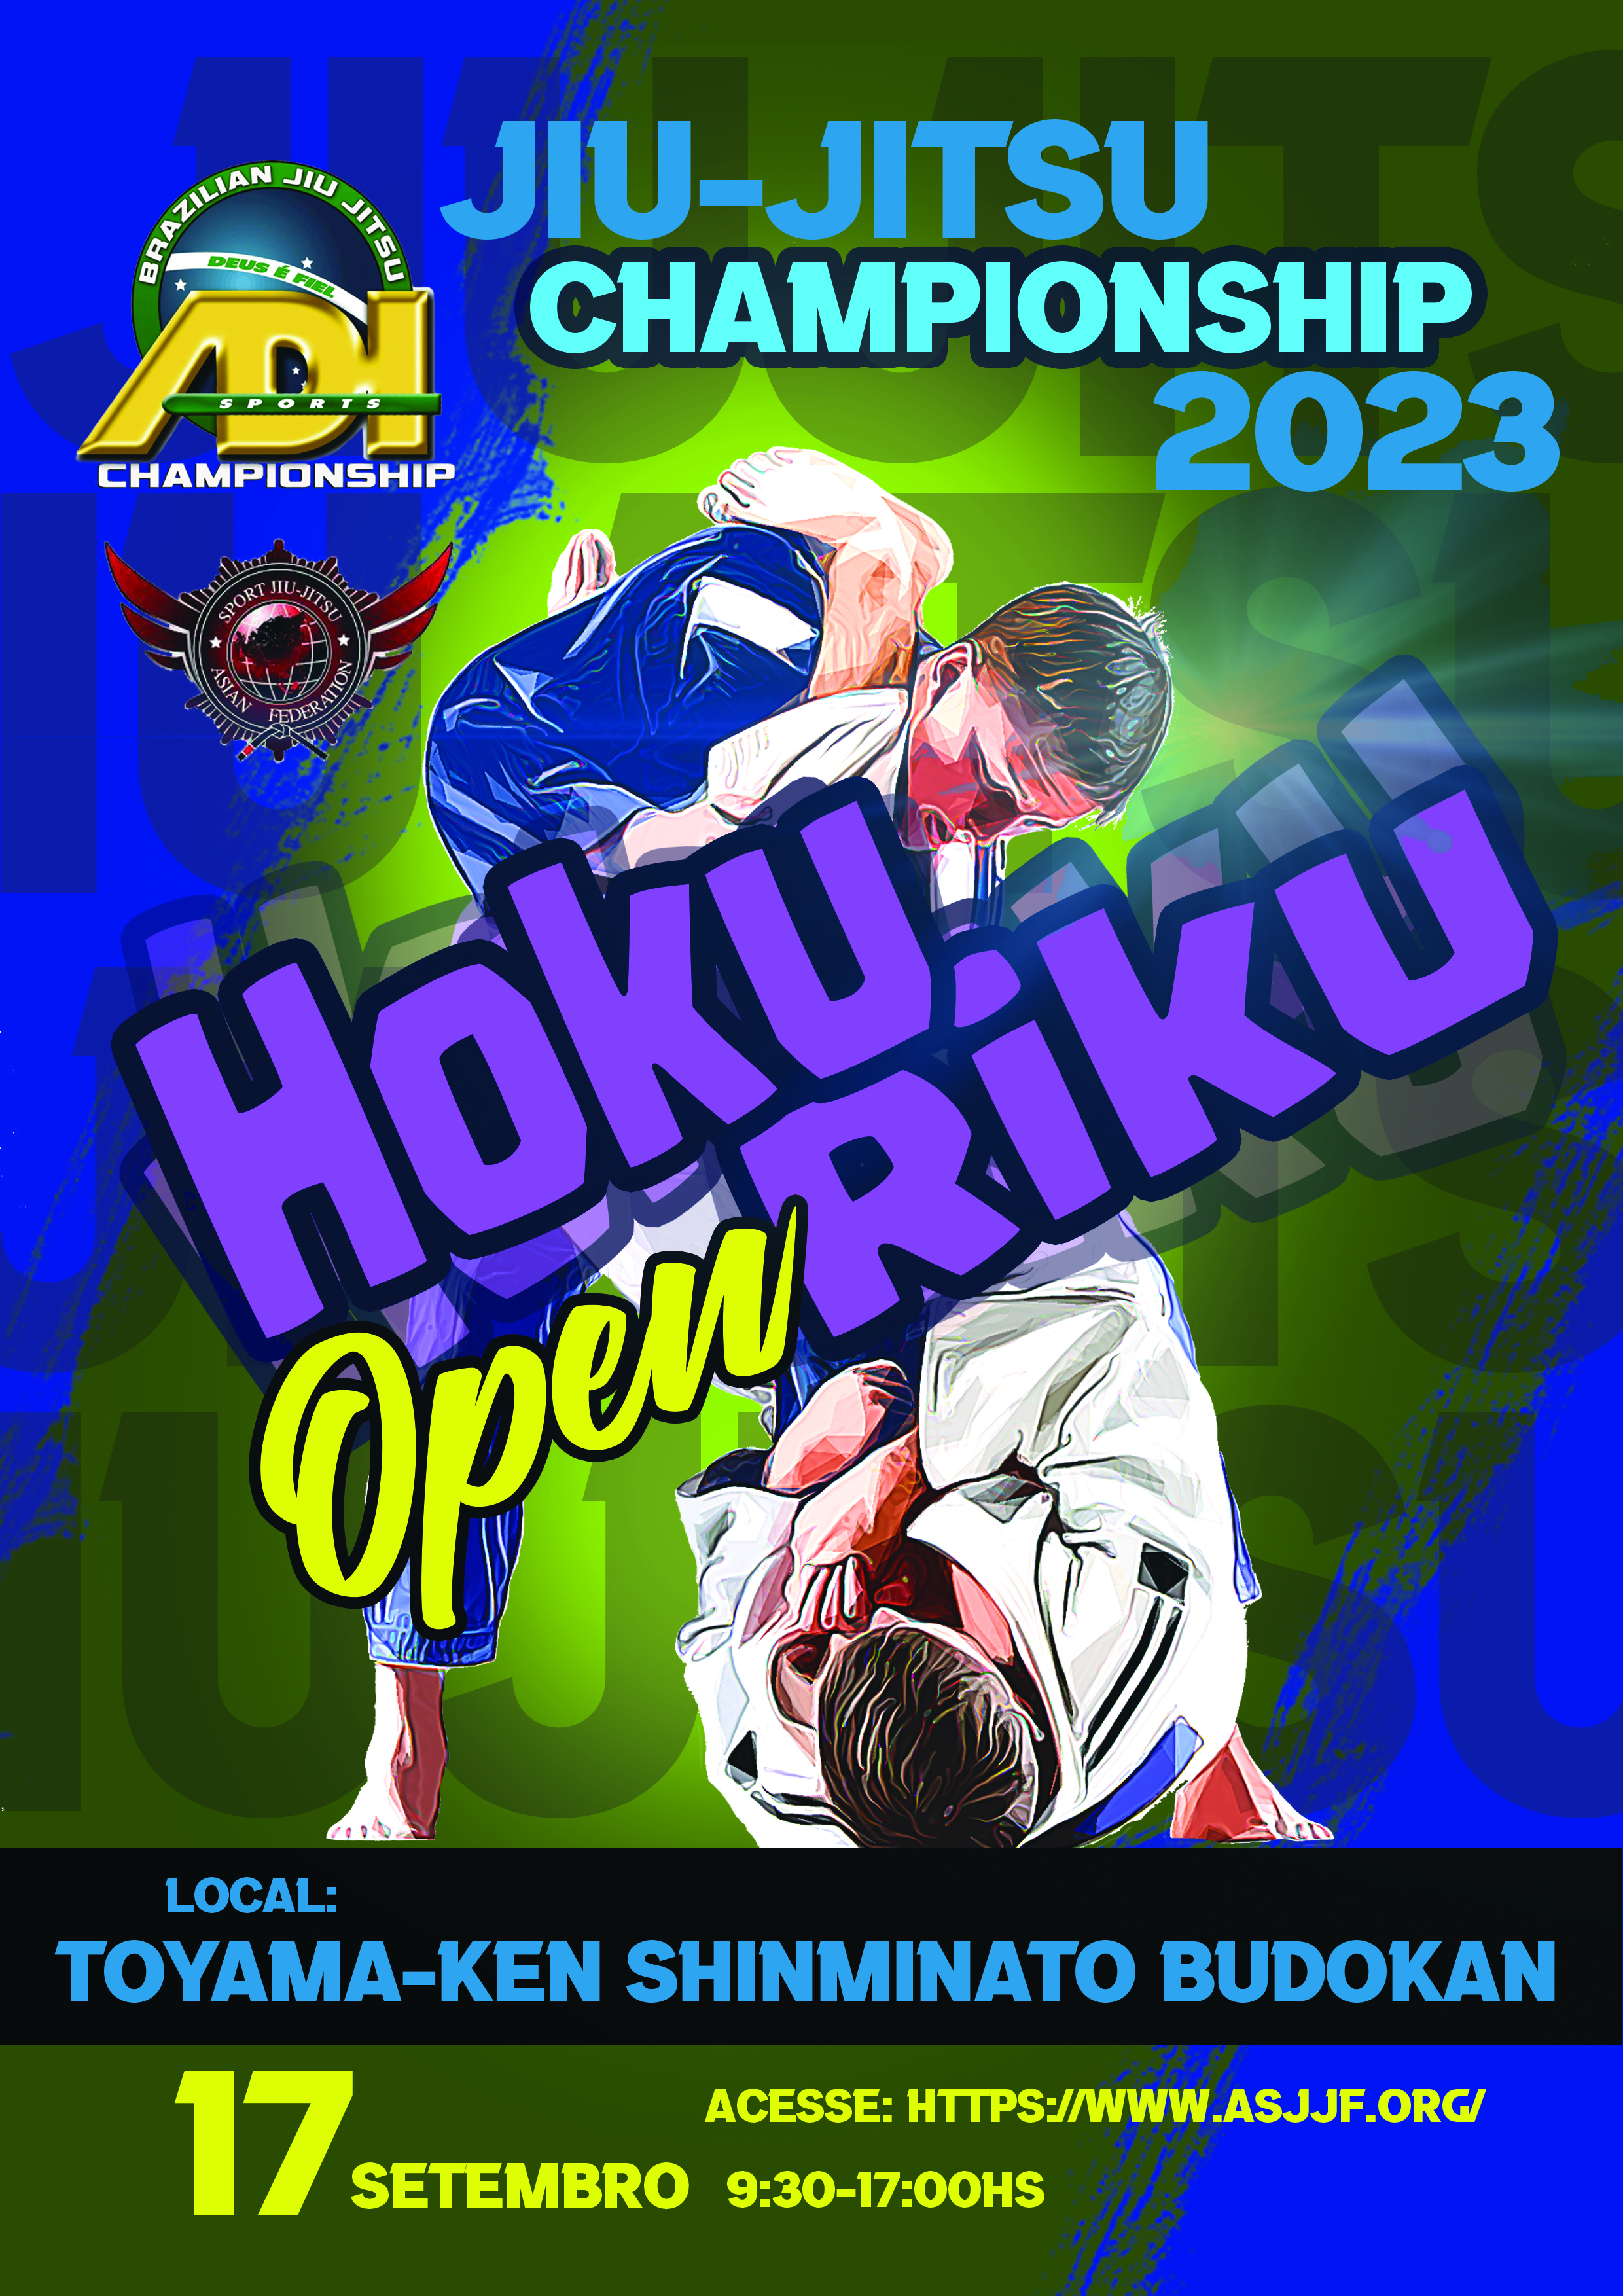 hokuriku Open jiu jitsu championship 2023